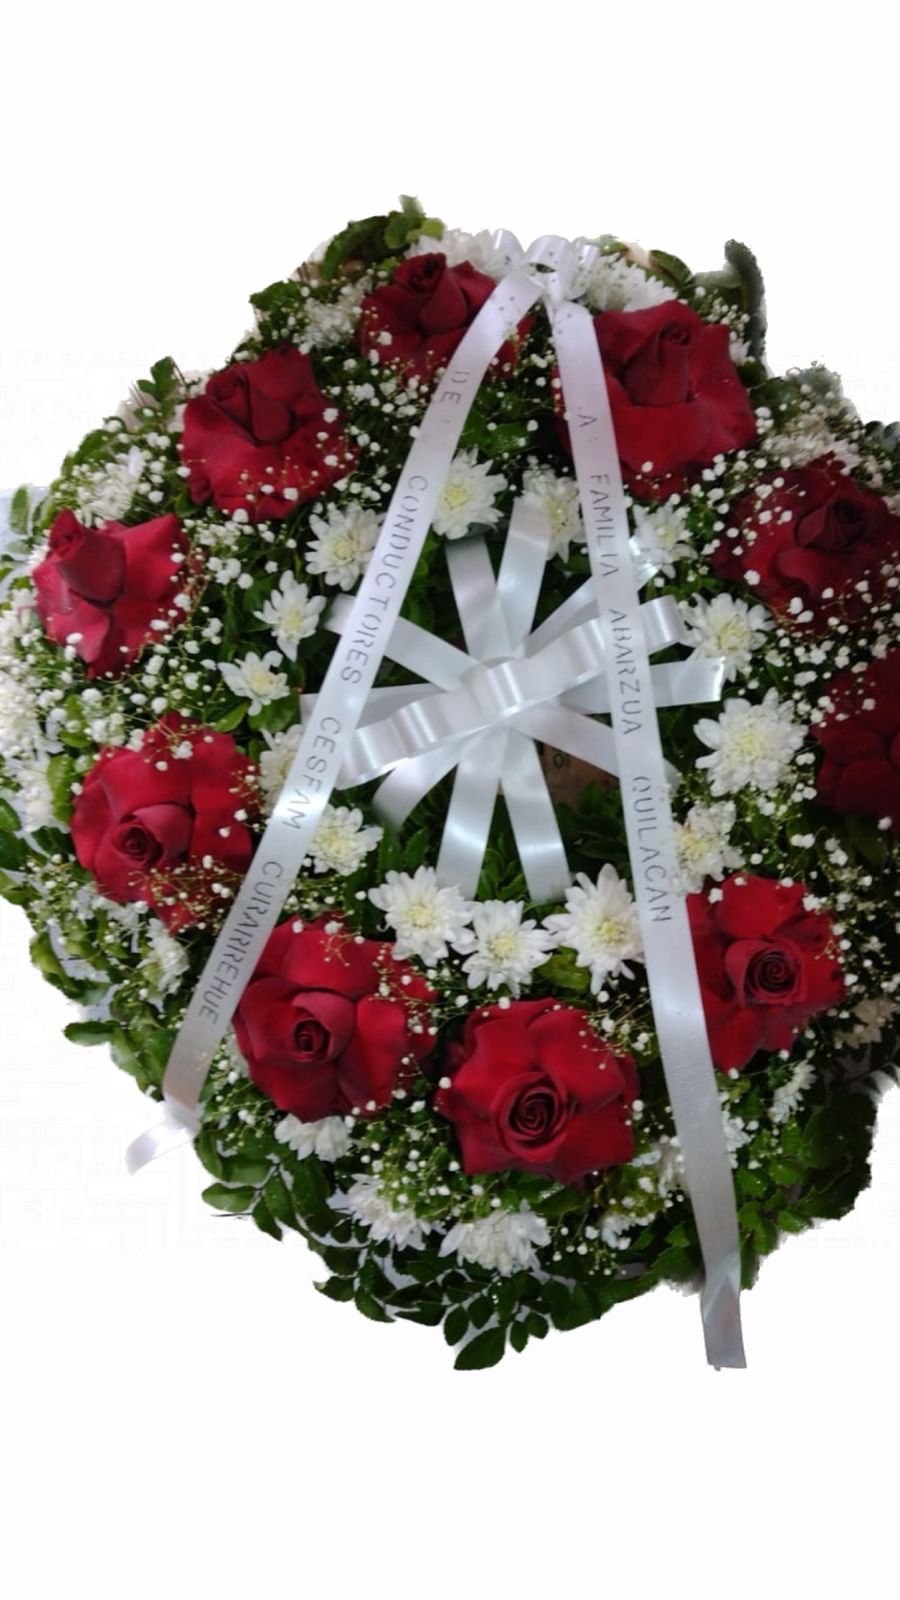 Arreglo condolencias corona redonda rosas rojas flores blancas - FLORERIA  ILUSION PUCON